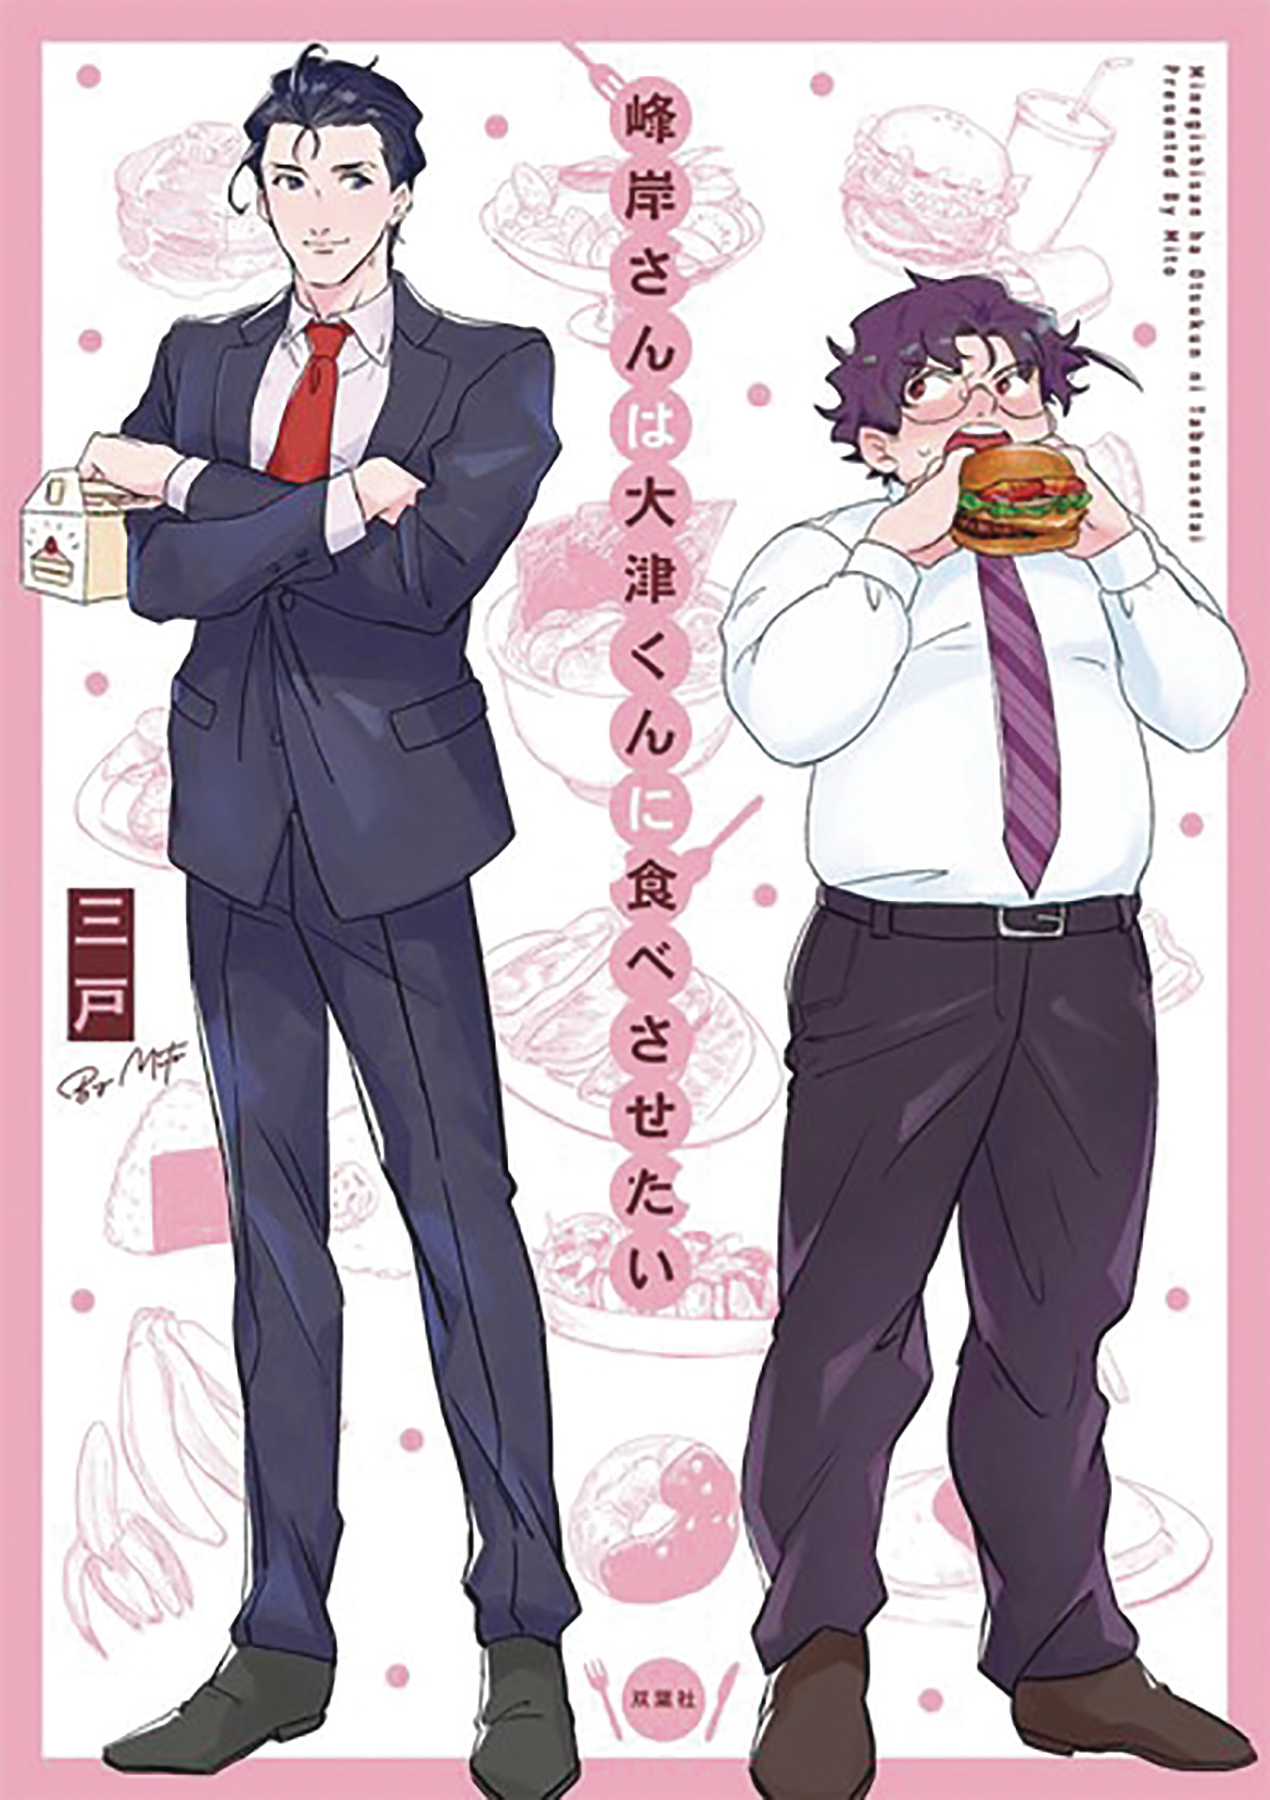 Manly Appetites Minegishi Loves Otsu Manga Volume 1 (Mature)